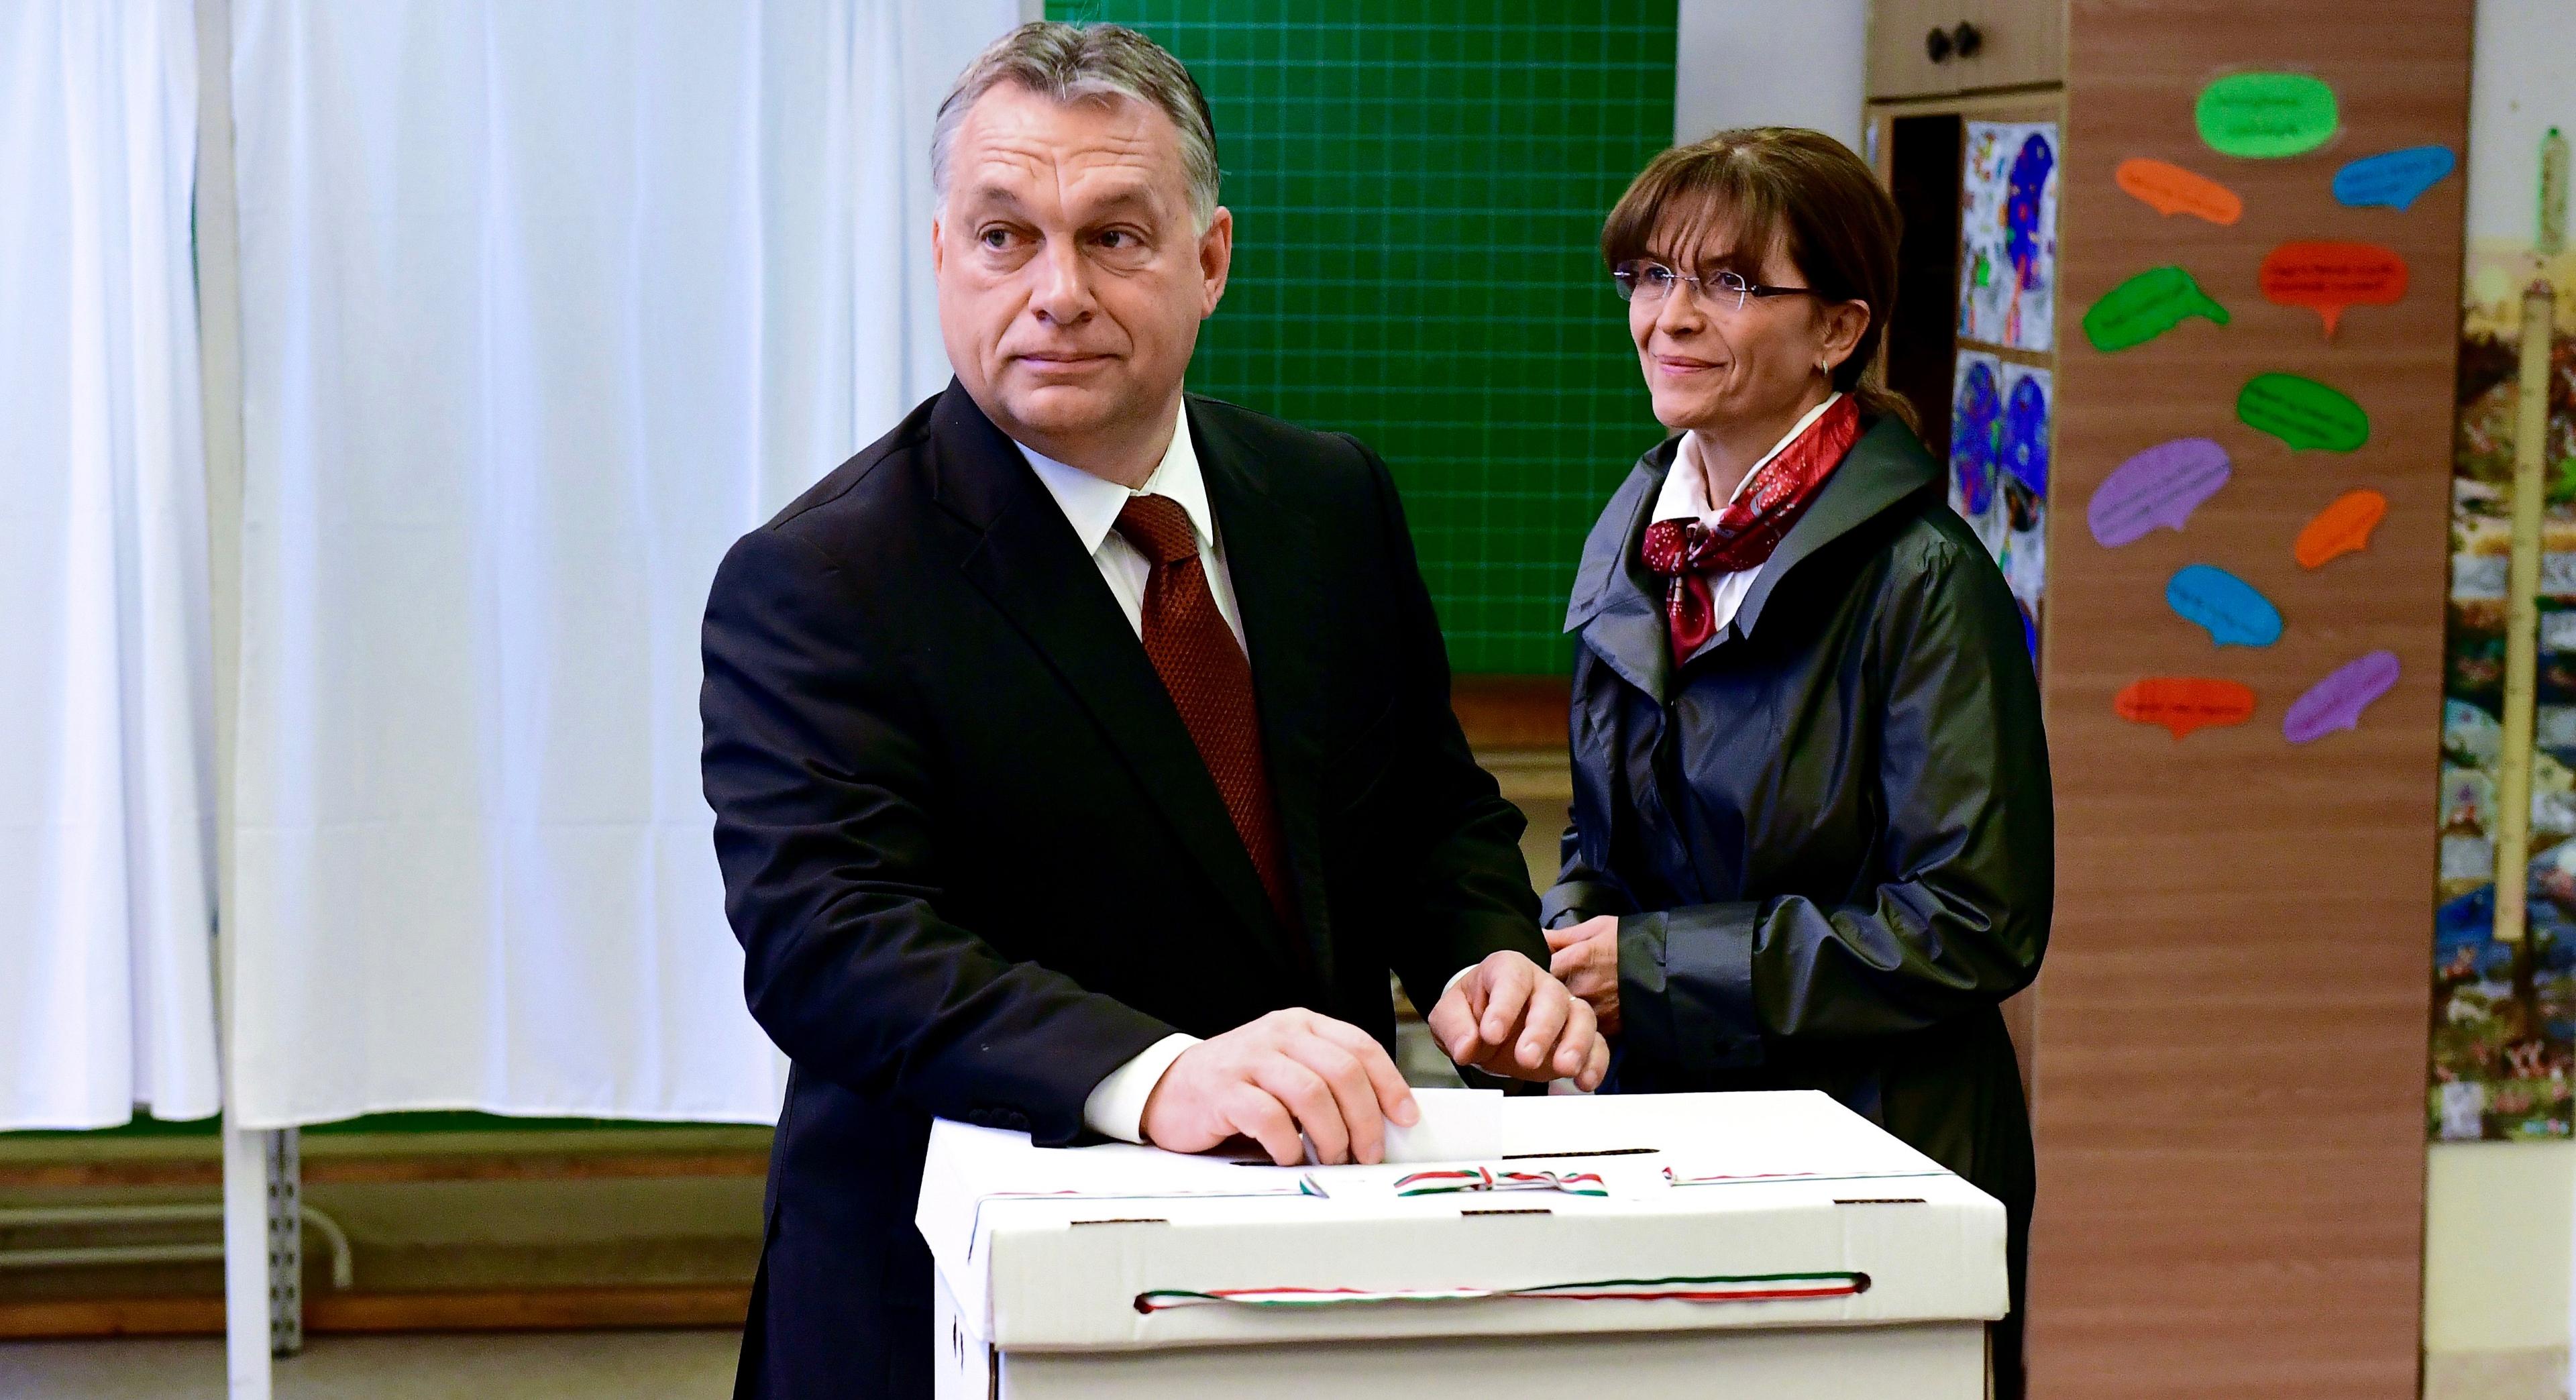 Ungerns premiärminister Viktor Orban (till vänster) vid valurnan tillsammans med sin fru Aniko Levai i Budapest den 2 oktober 2016. Valresultatet blev ogiltigt på grund av lågt valdeltagande. (Foto: Attila Kisbenedek/AFP/Getty Images)